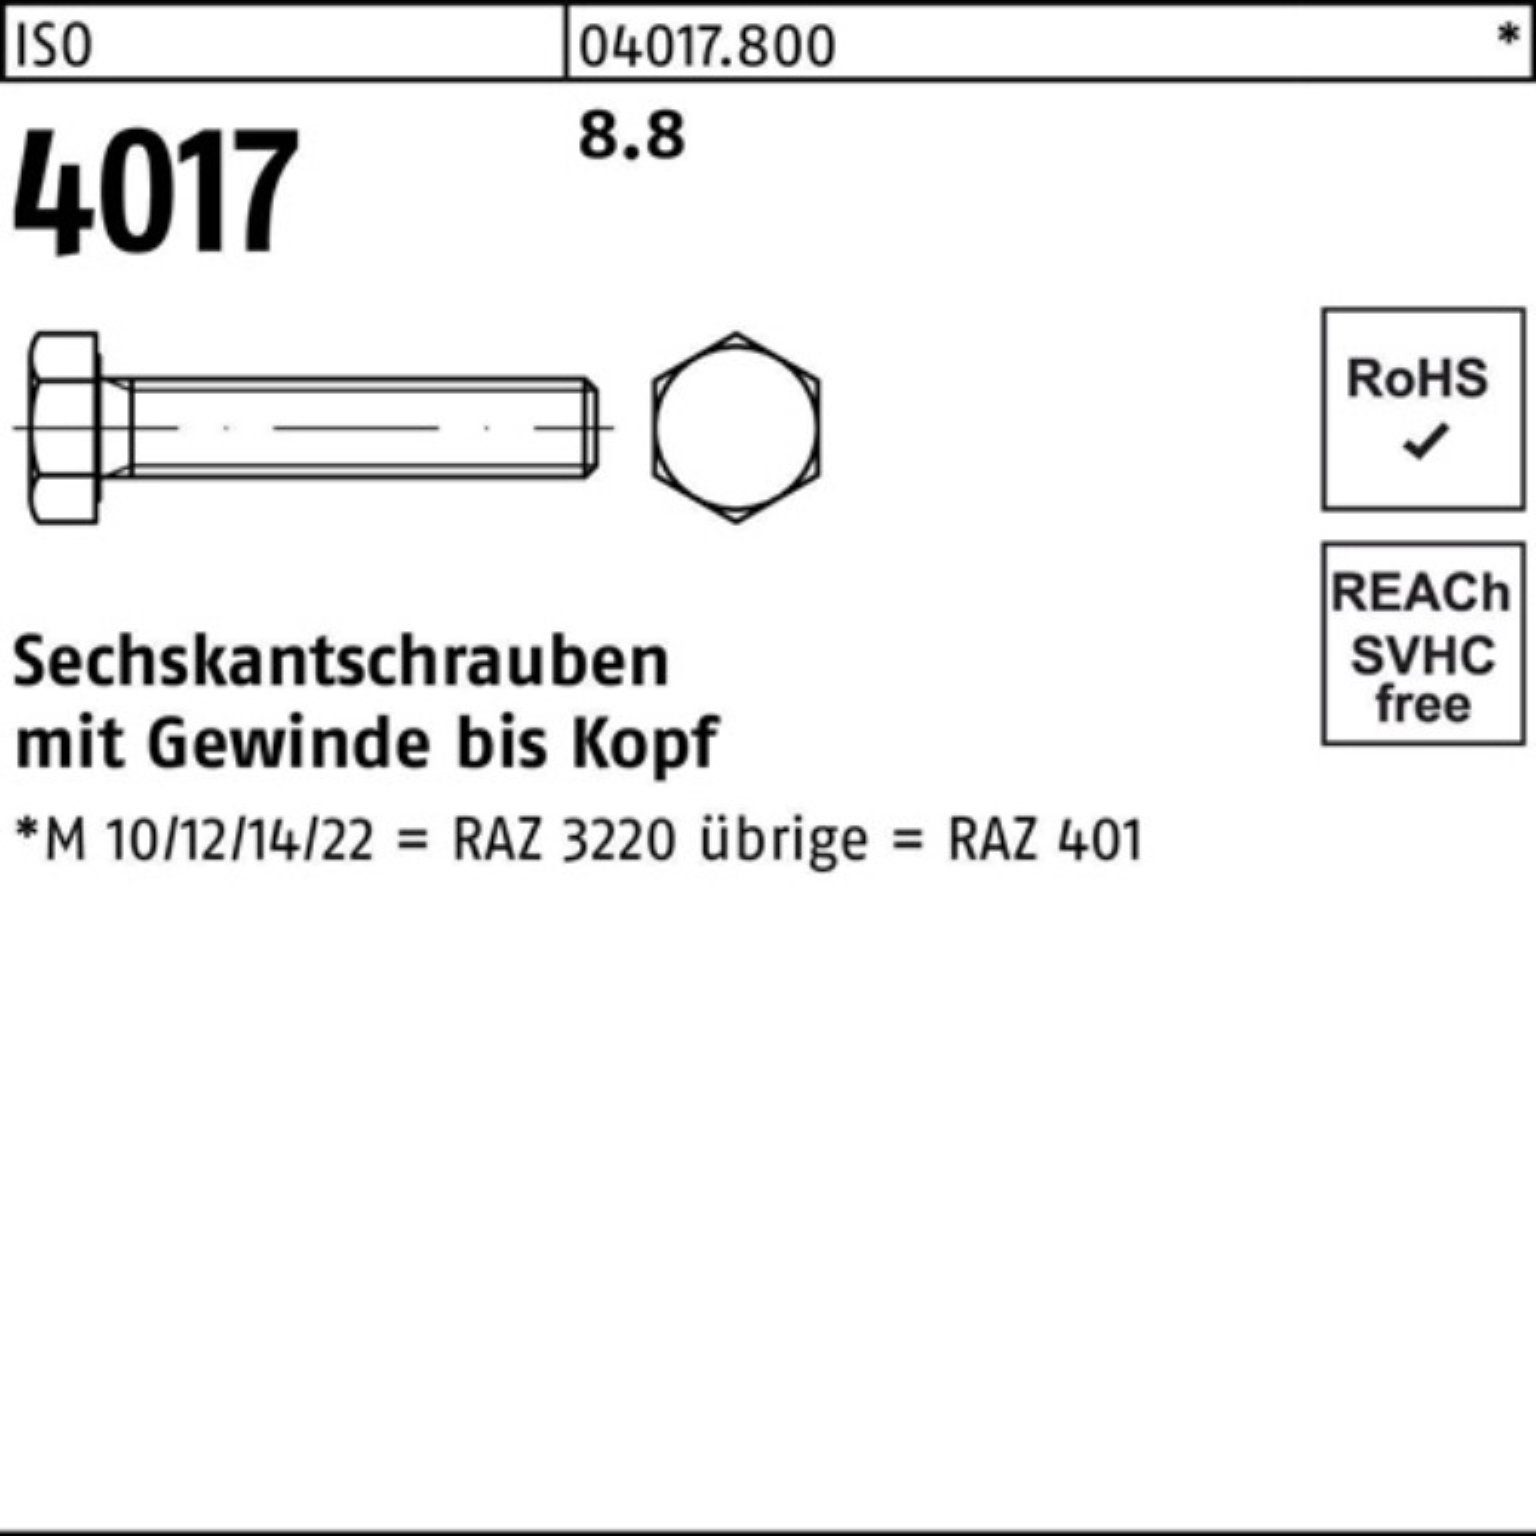 Bufab Sechskantschraube 100er Pack VG 170 Sechskantschraube 4017 401 Stück ISO ISO 8.8 M20x 1